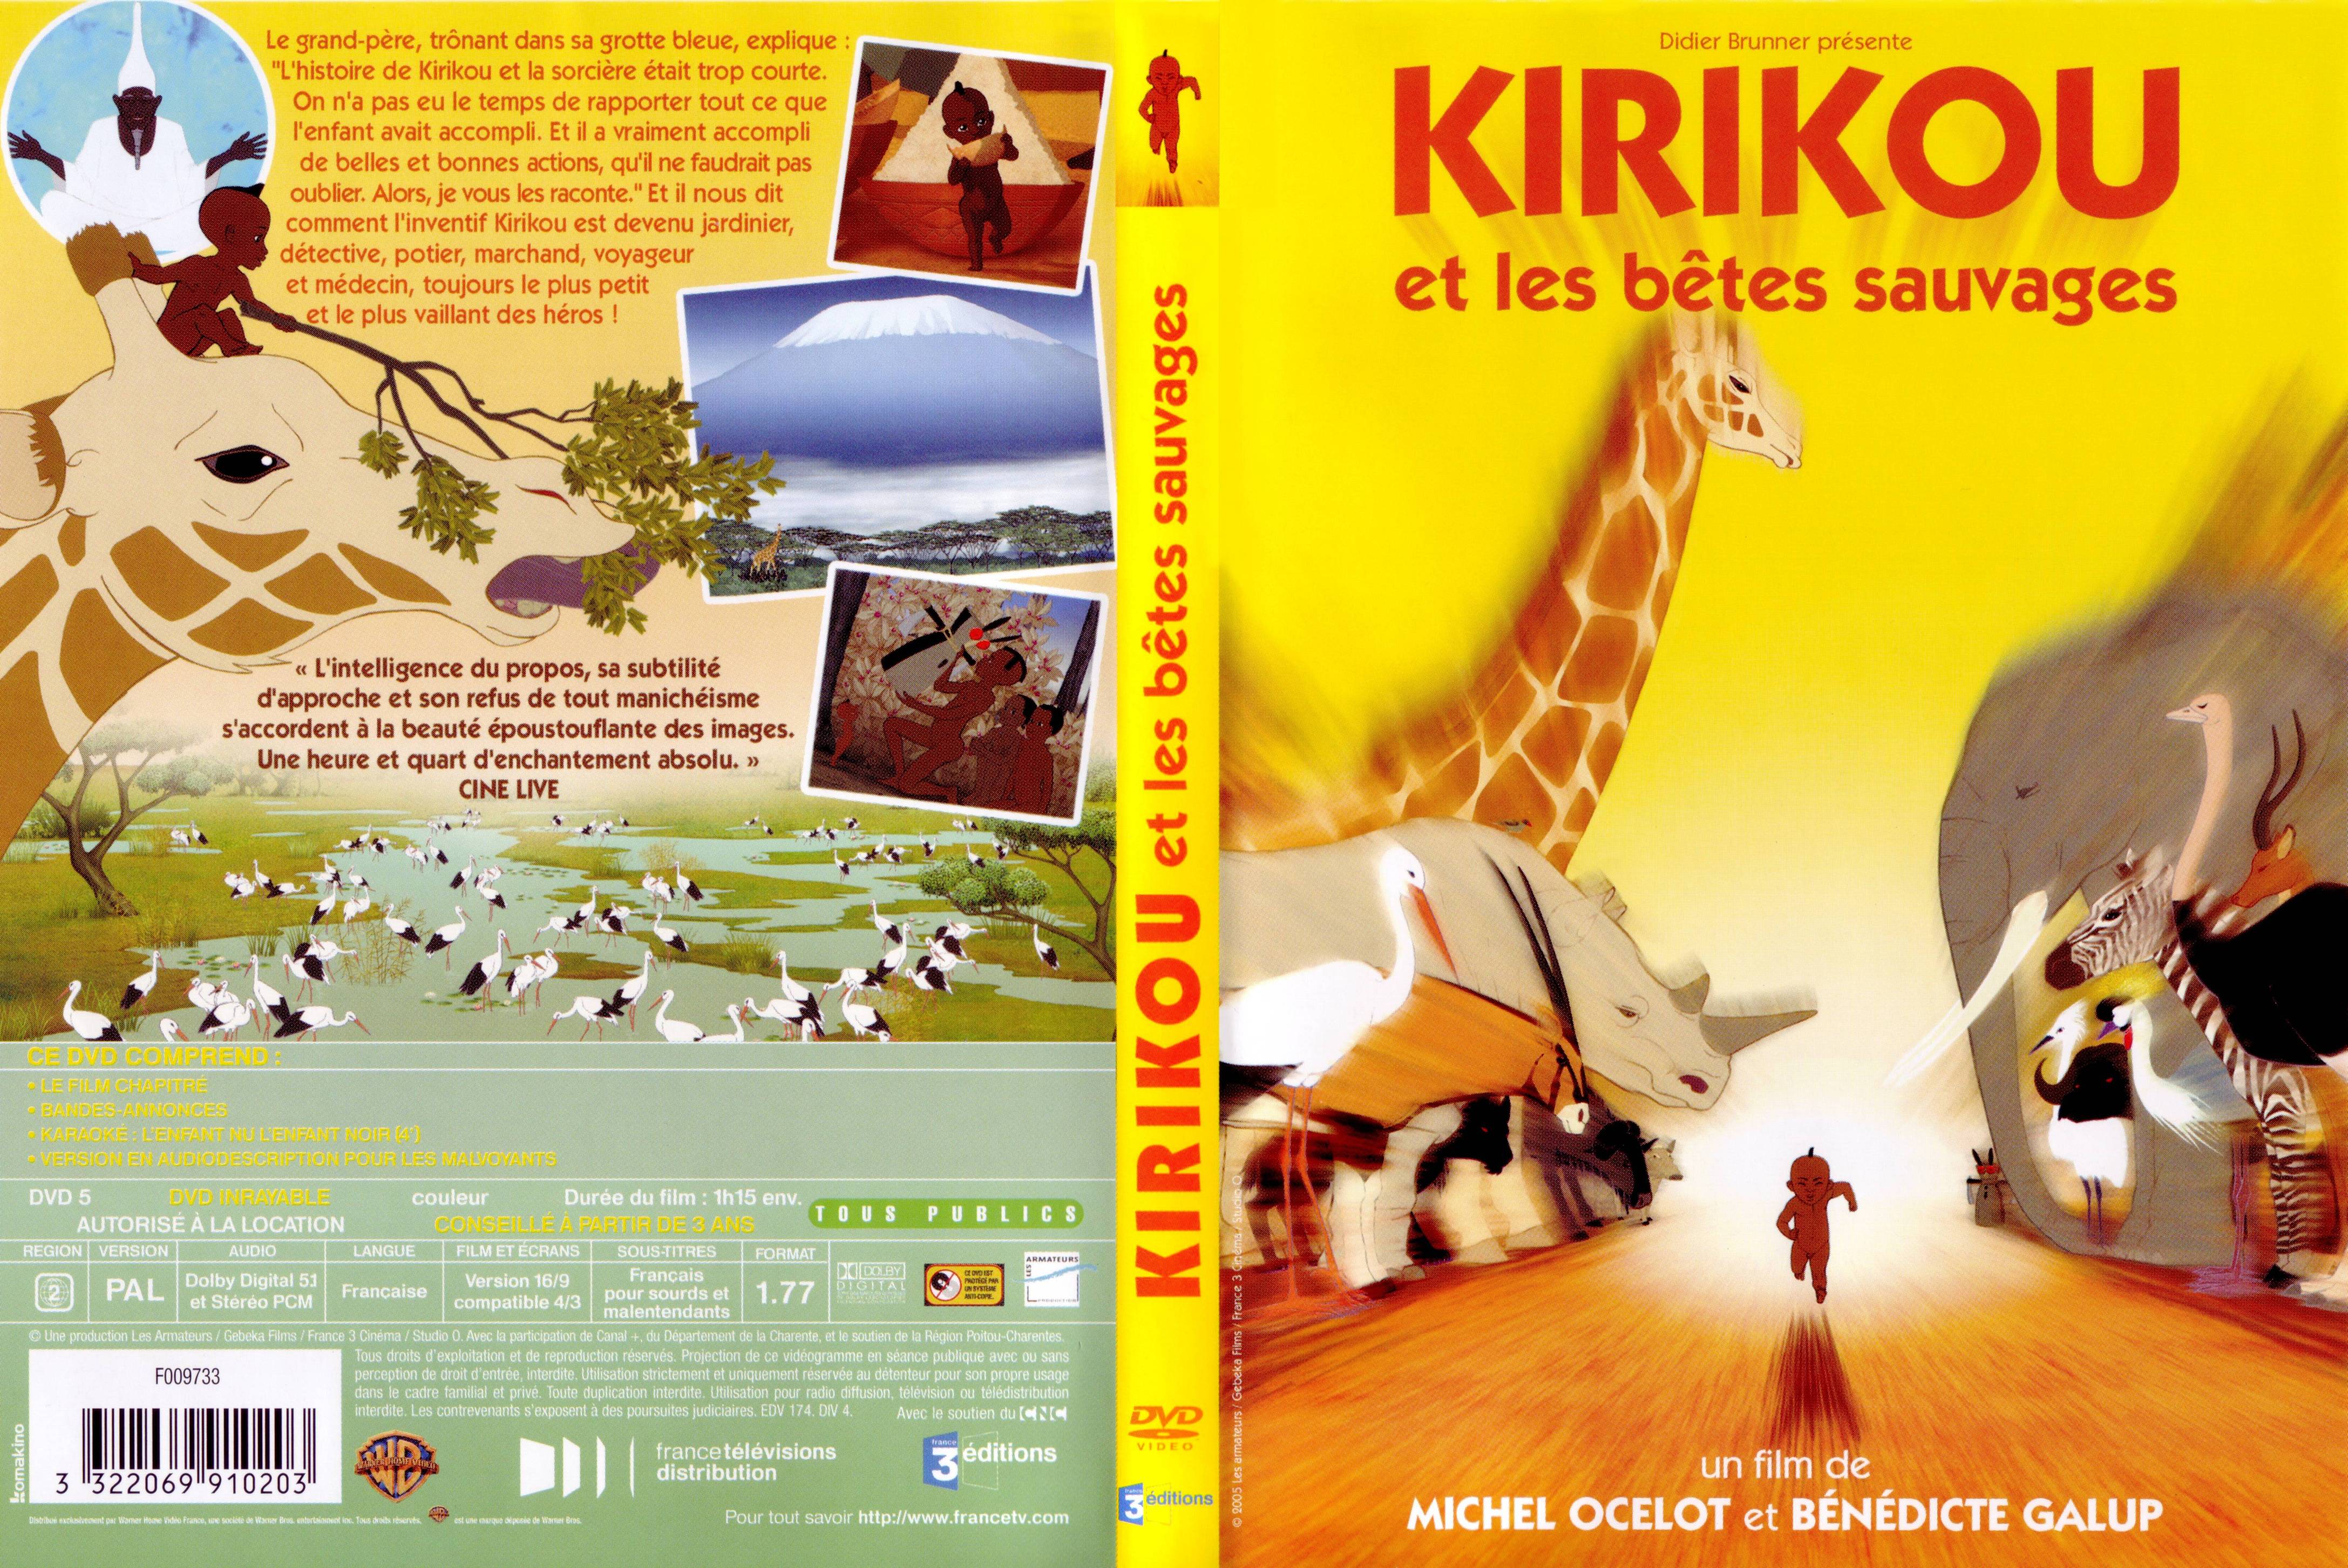 Jaquette DVD Kirikou et les betes sauvages